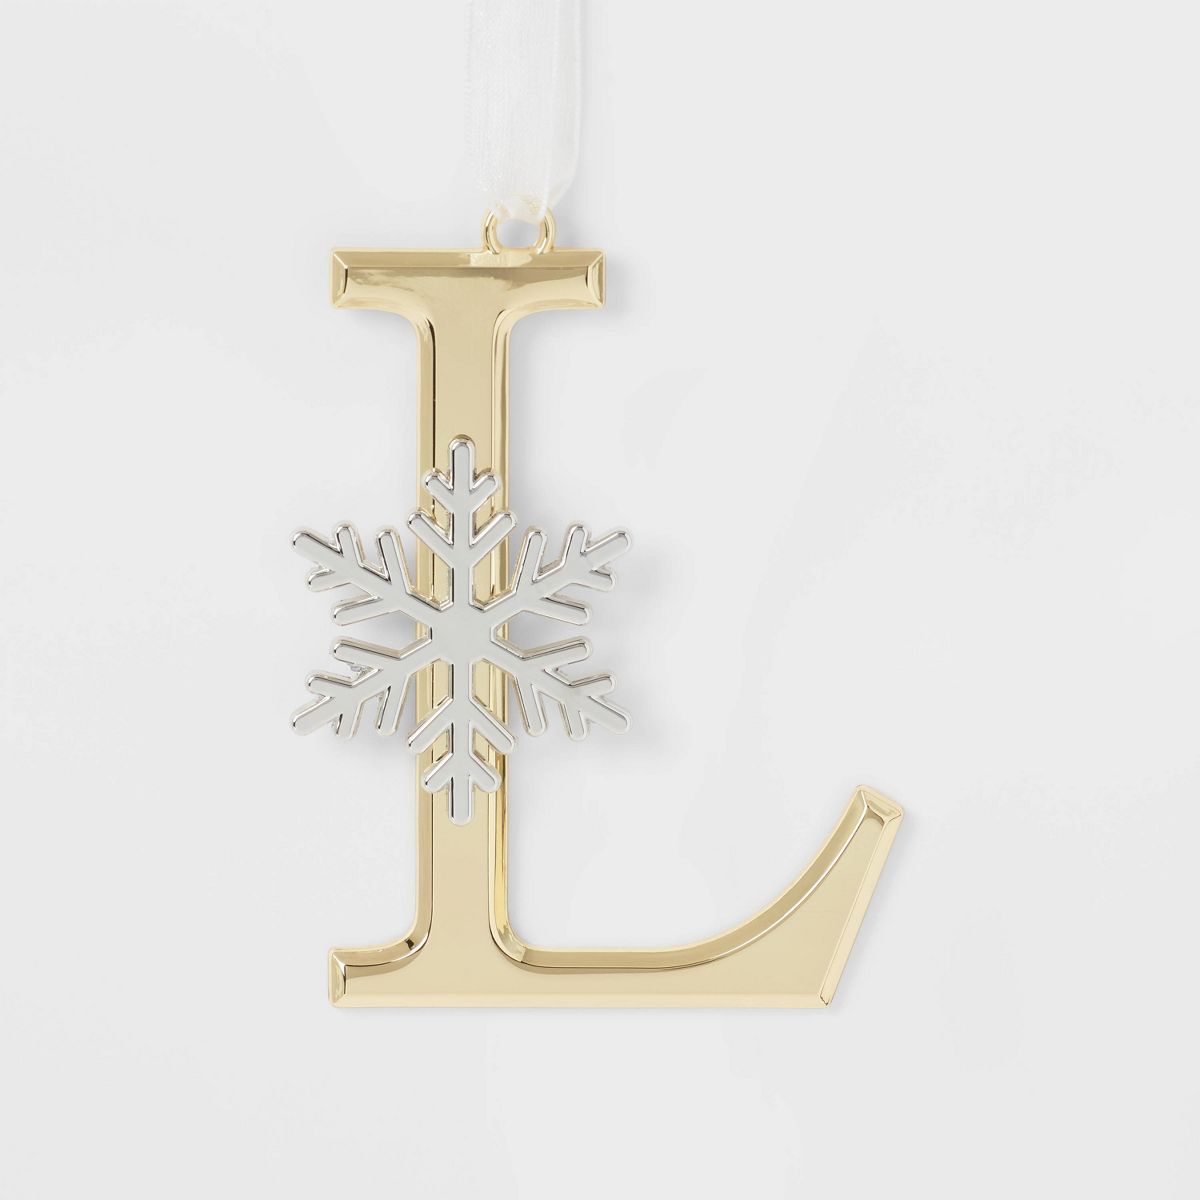 Metal Monogram 'L' with Snowflake Christmas Tree Ornament Gold - Wondershop™ | Target